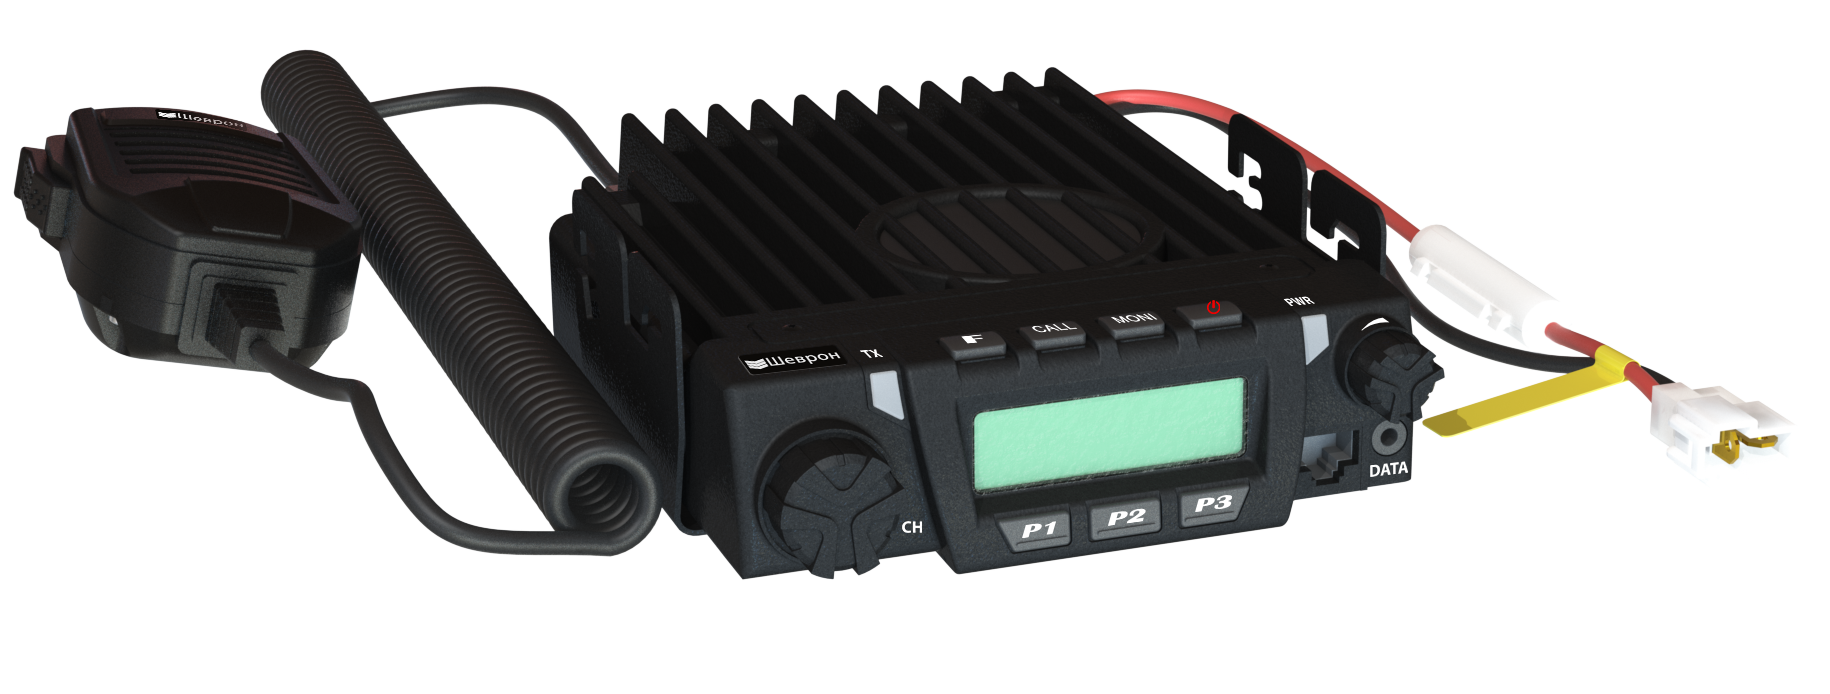 Рация Шеврон Т-34 U4 - профессиональная радиостанция для работы в UHF - диапазоне частот, предназначенная как для любительского, так и для профессионального использования.